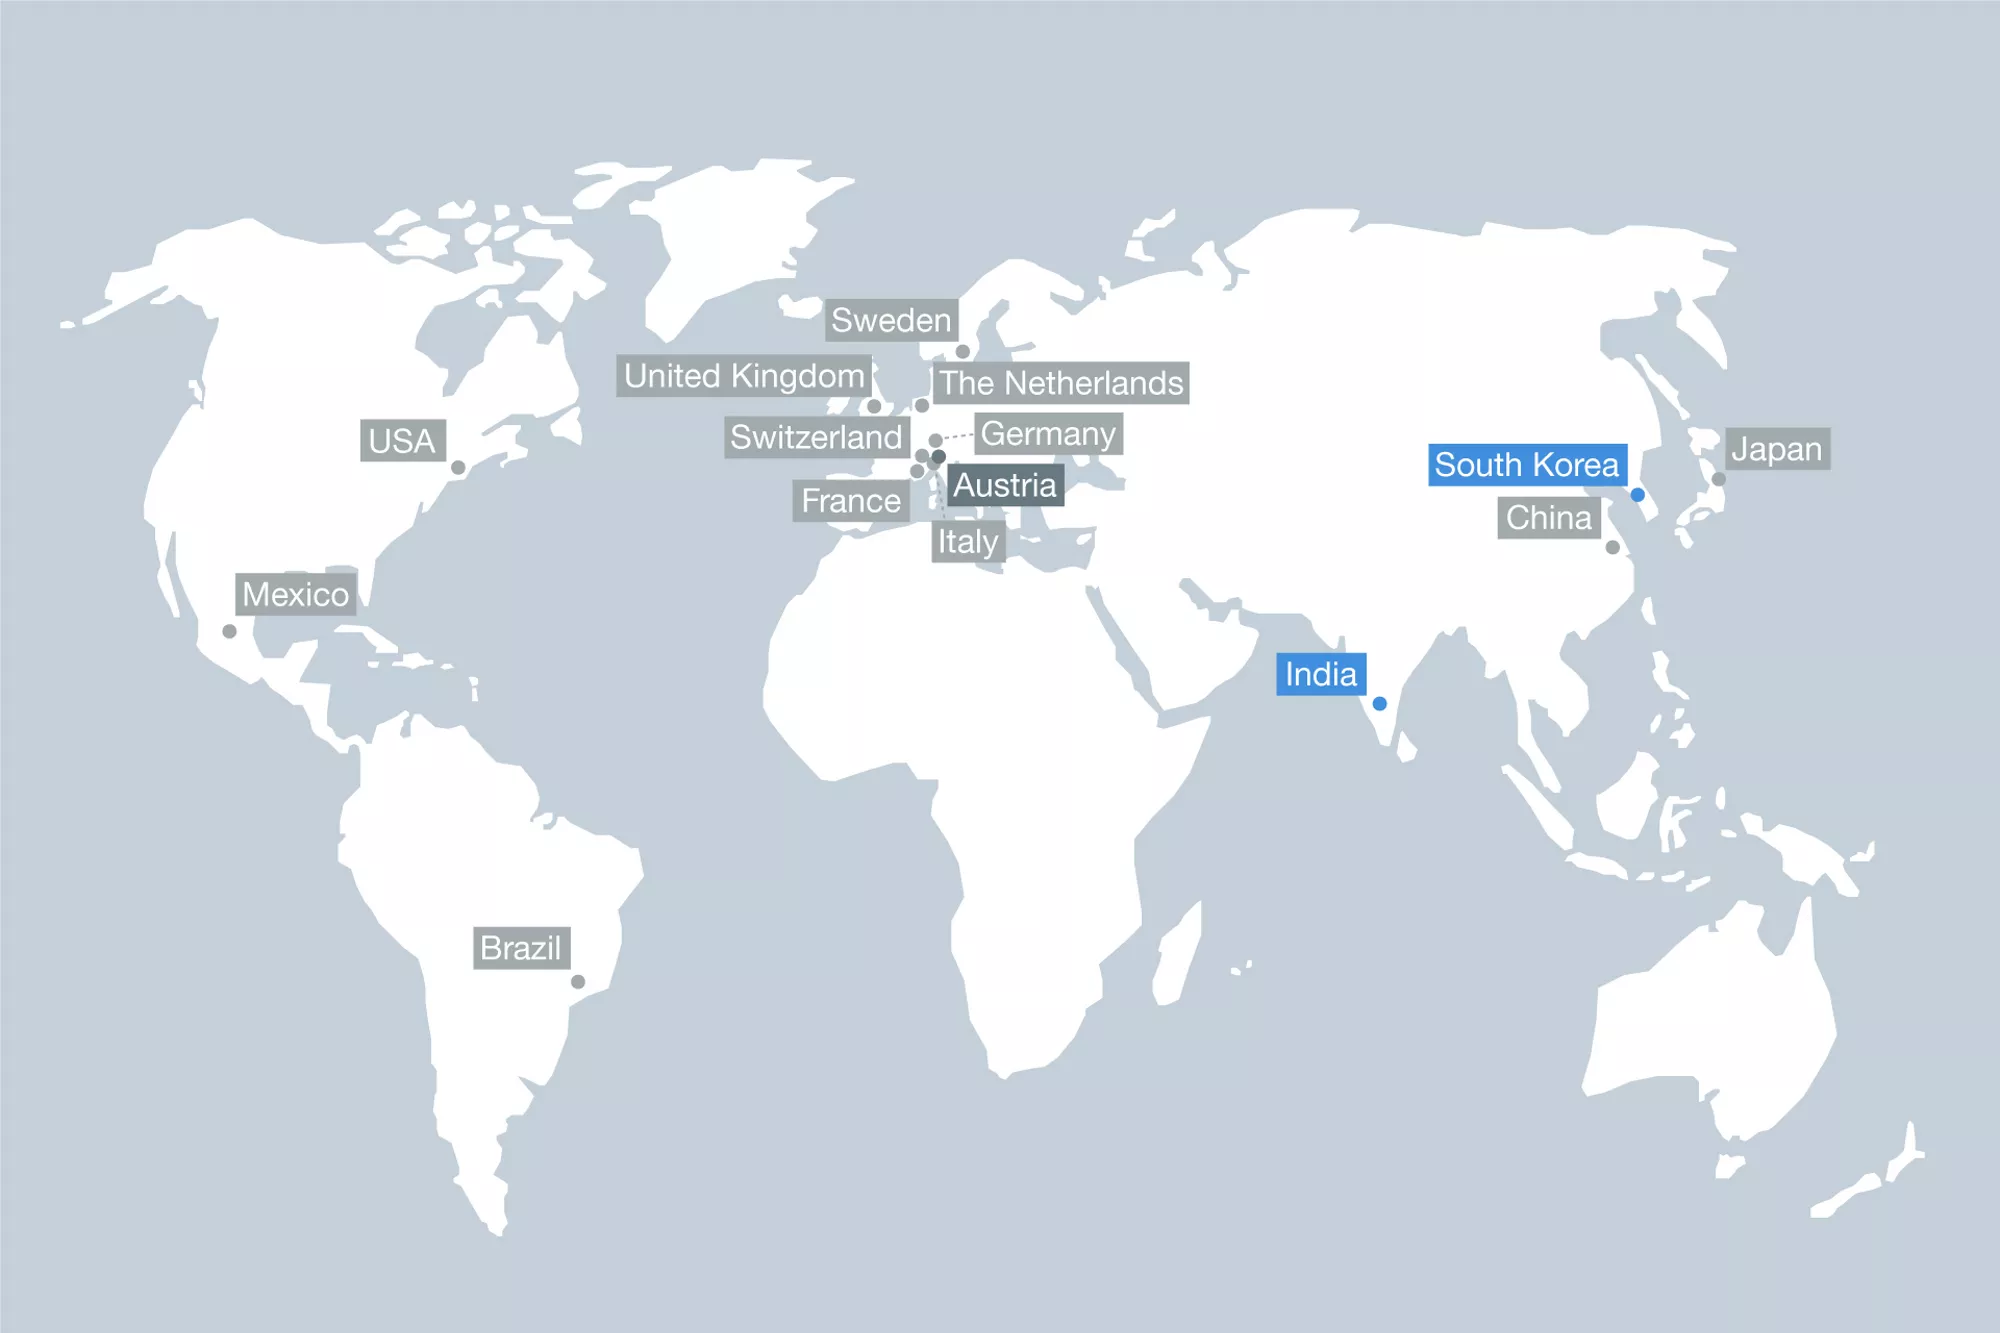 Weltkarte mit Plansee Unternehmensstandorten weltweit